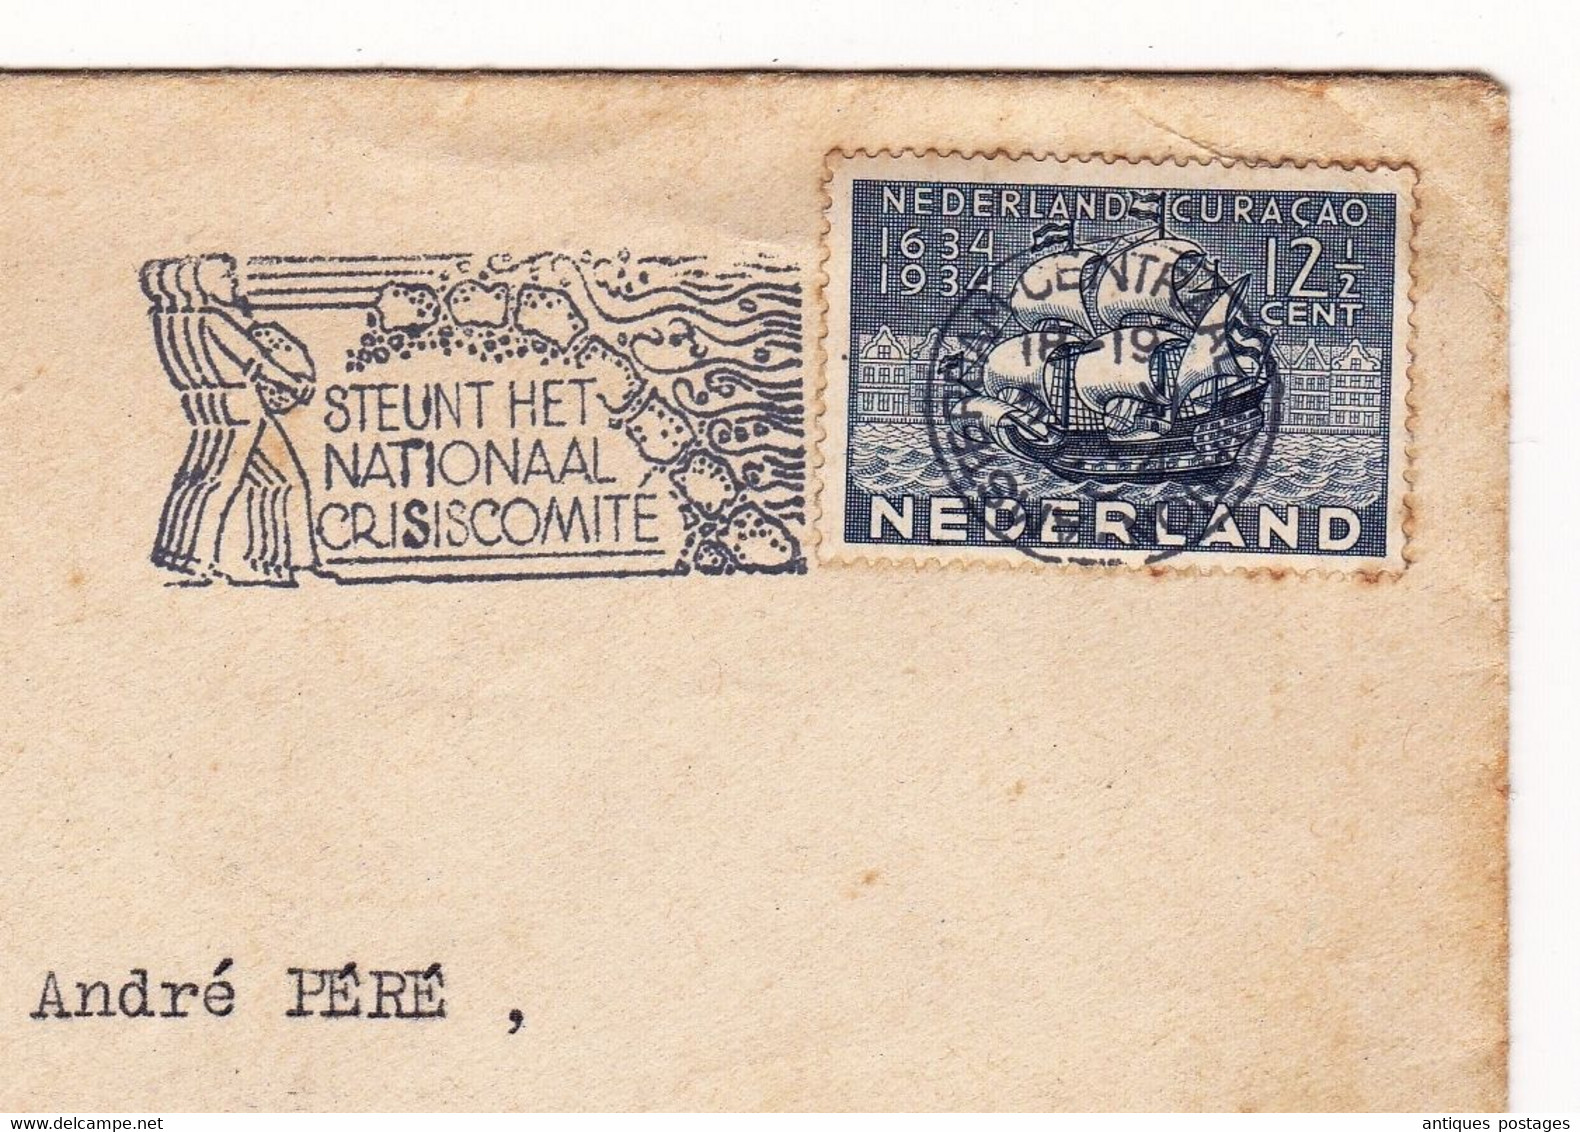 Nederland Amsterdam Curaçao Samadet Landes 1934 Steunt Het Nationaal Crisiscomite La Belle France Arènes De Nîmes - Poststempels/ Marcofilie